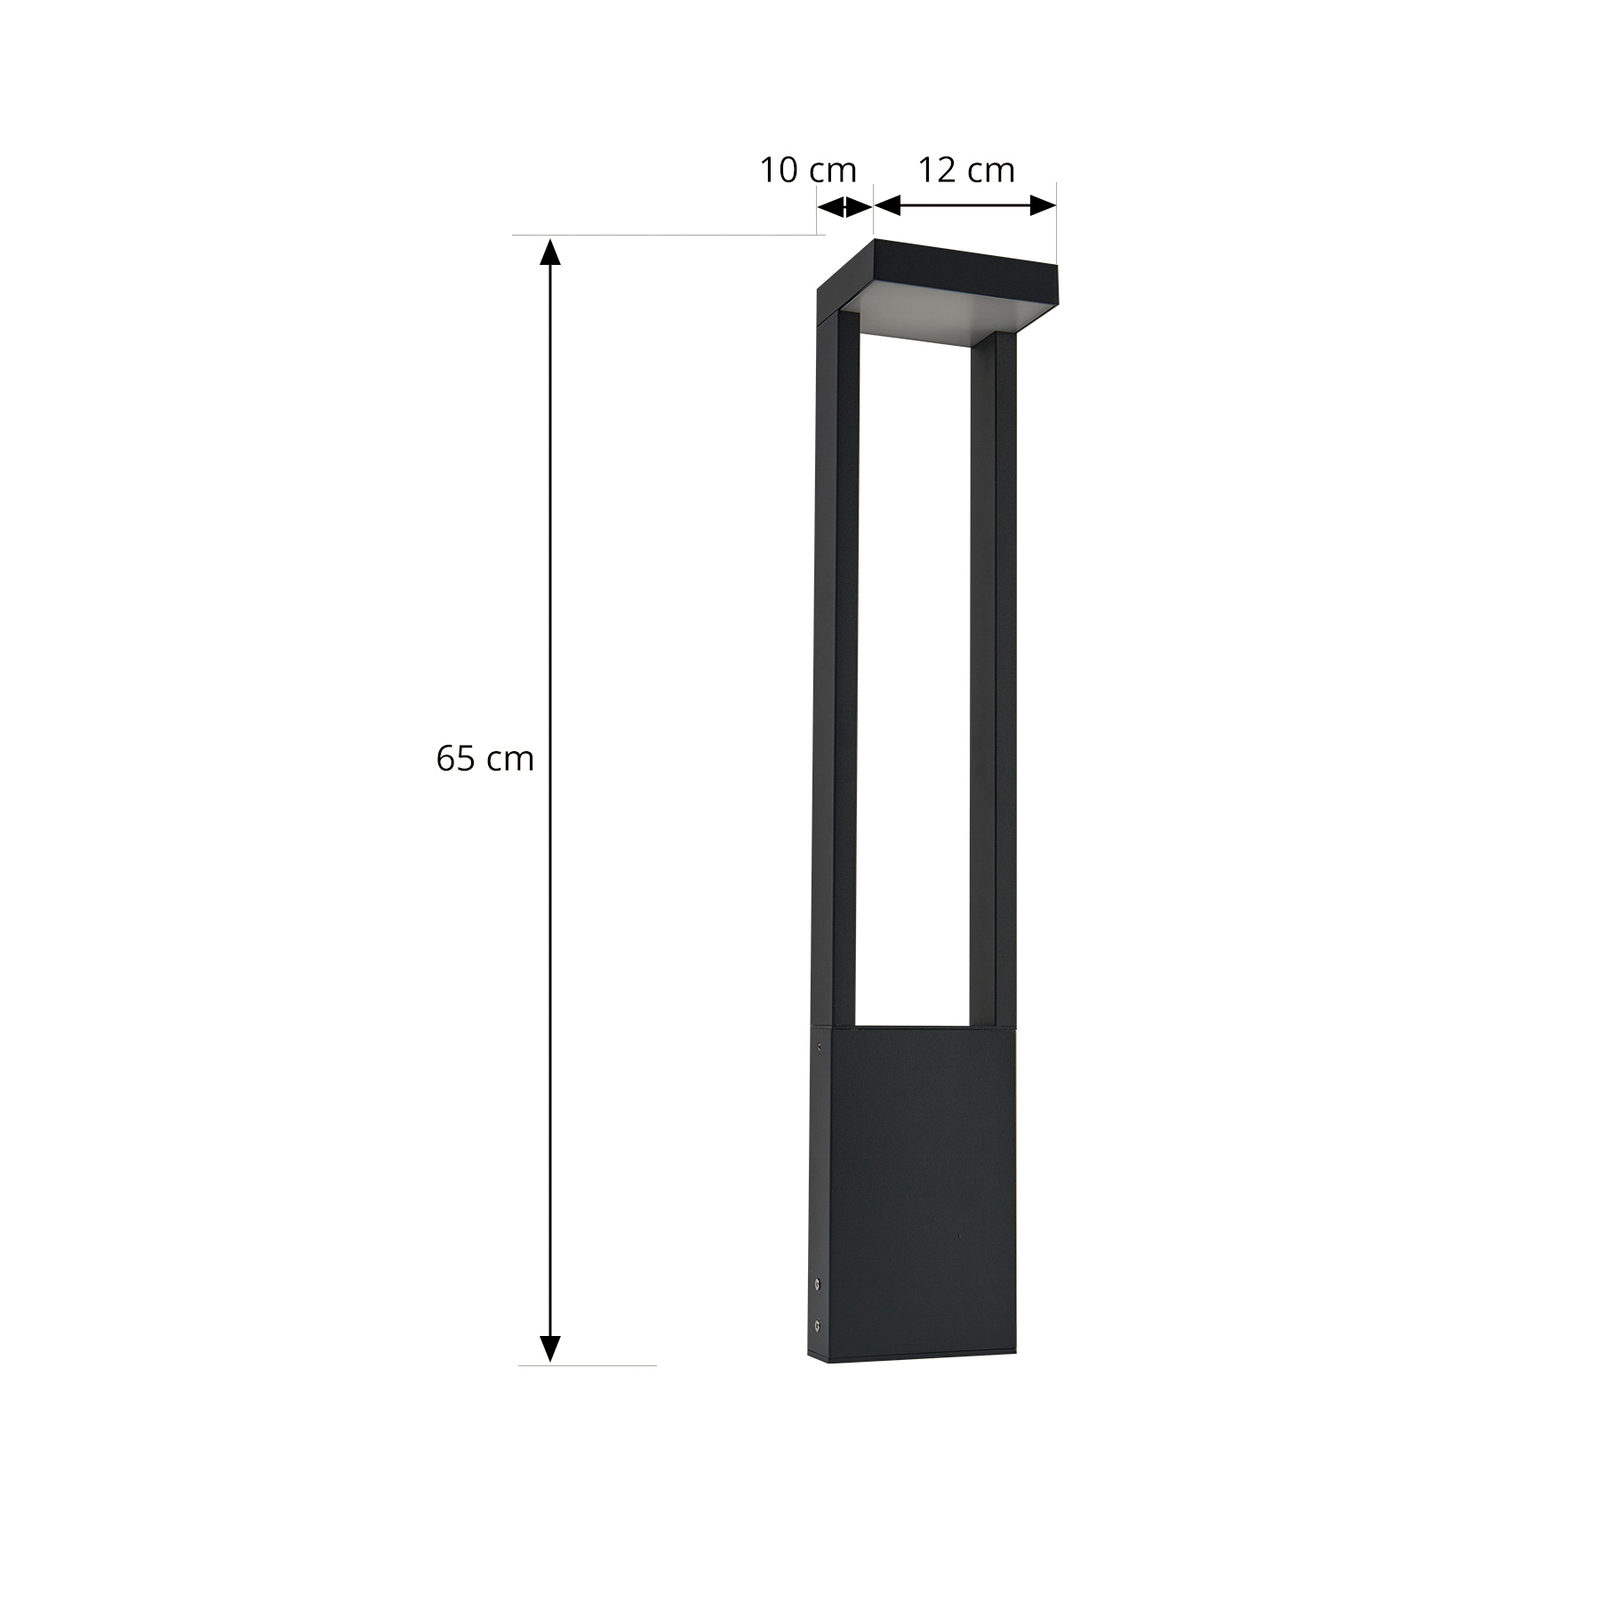 Słupek oświetleniowy LED Lonete, ciemnoszary, IP65, wysokość 65 cm